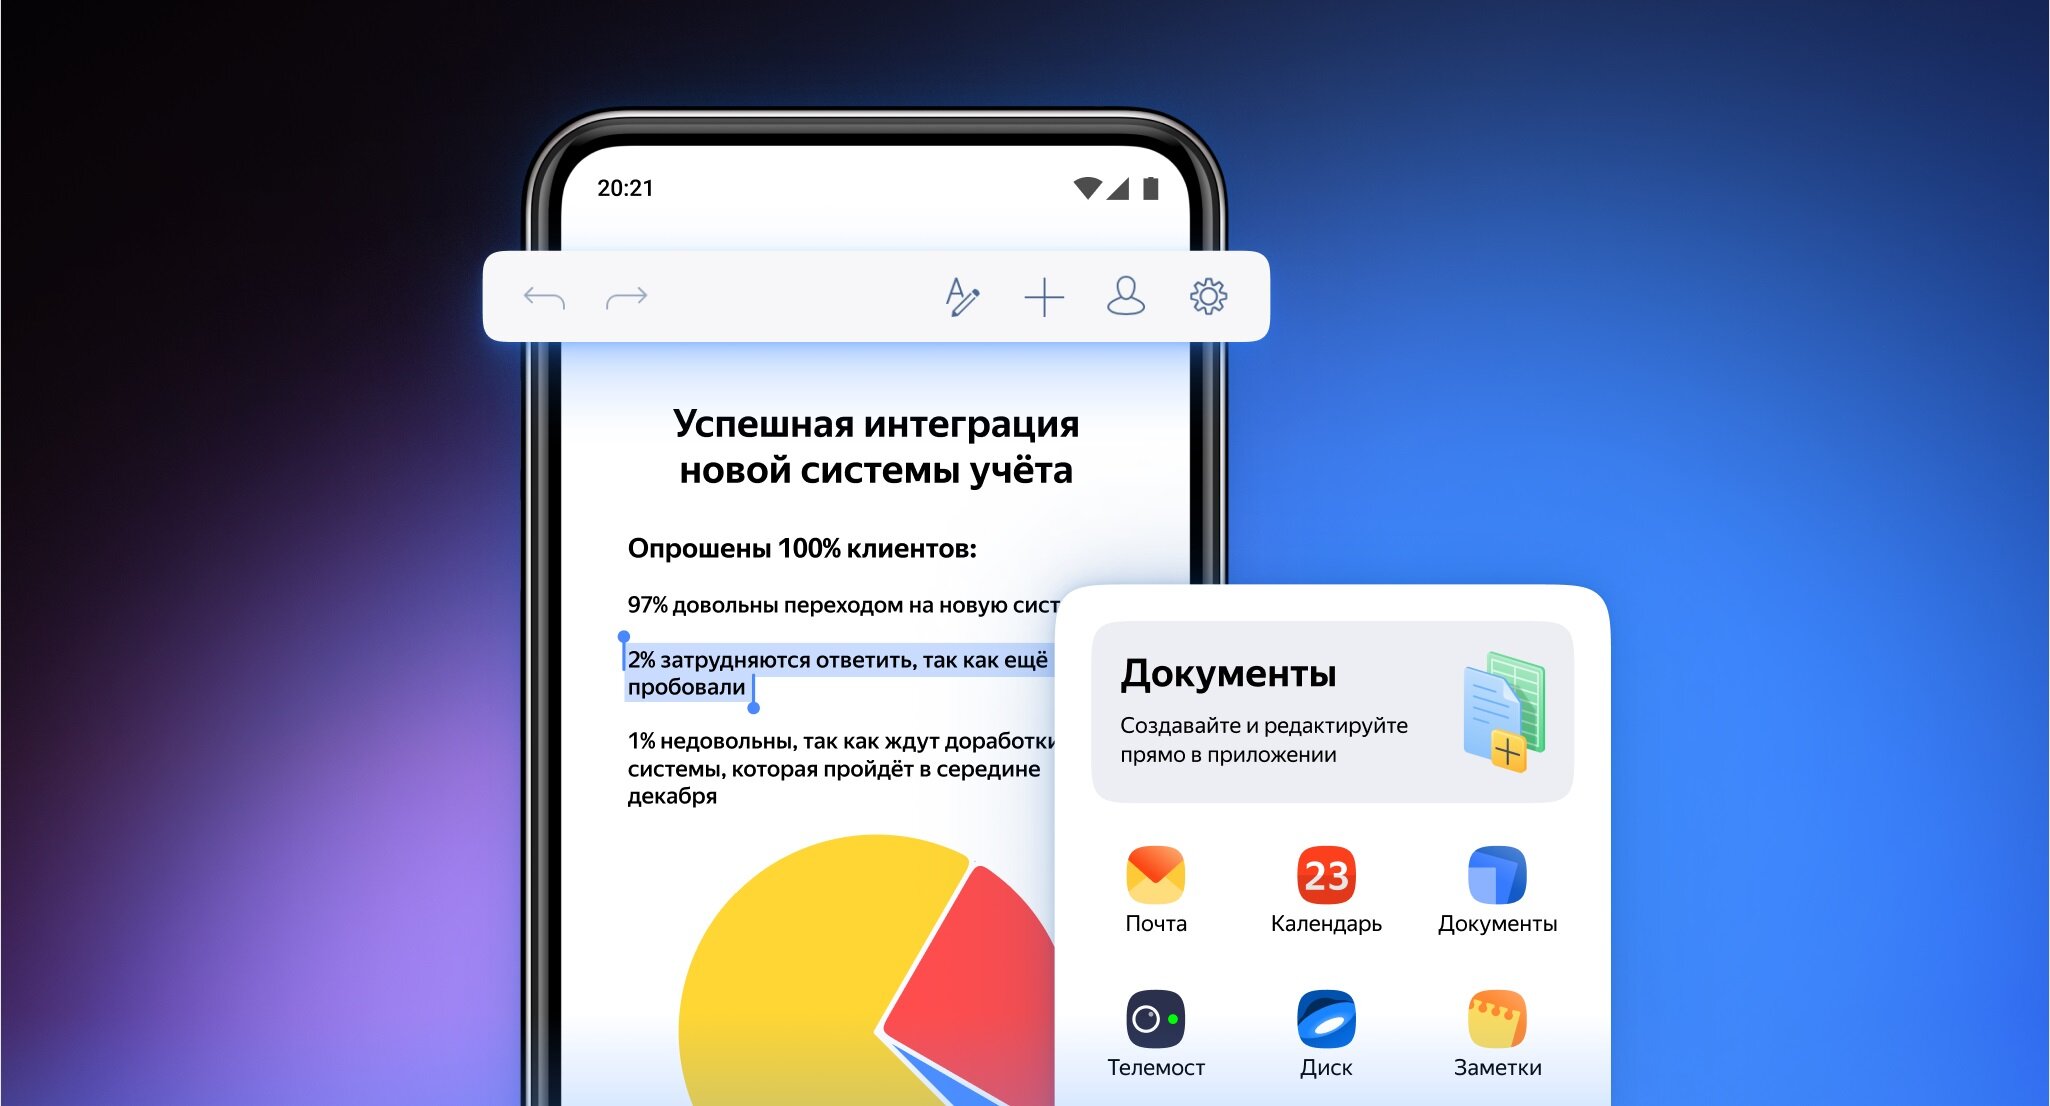 Редактировать документы со смартфона: Яндекс 360 заметно обновили